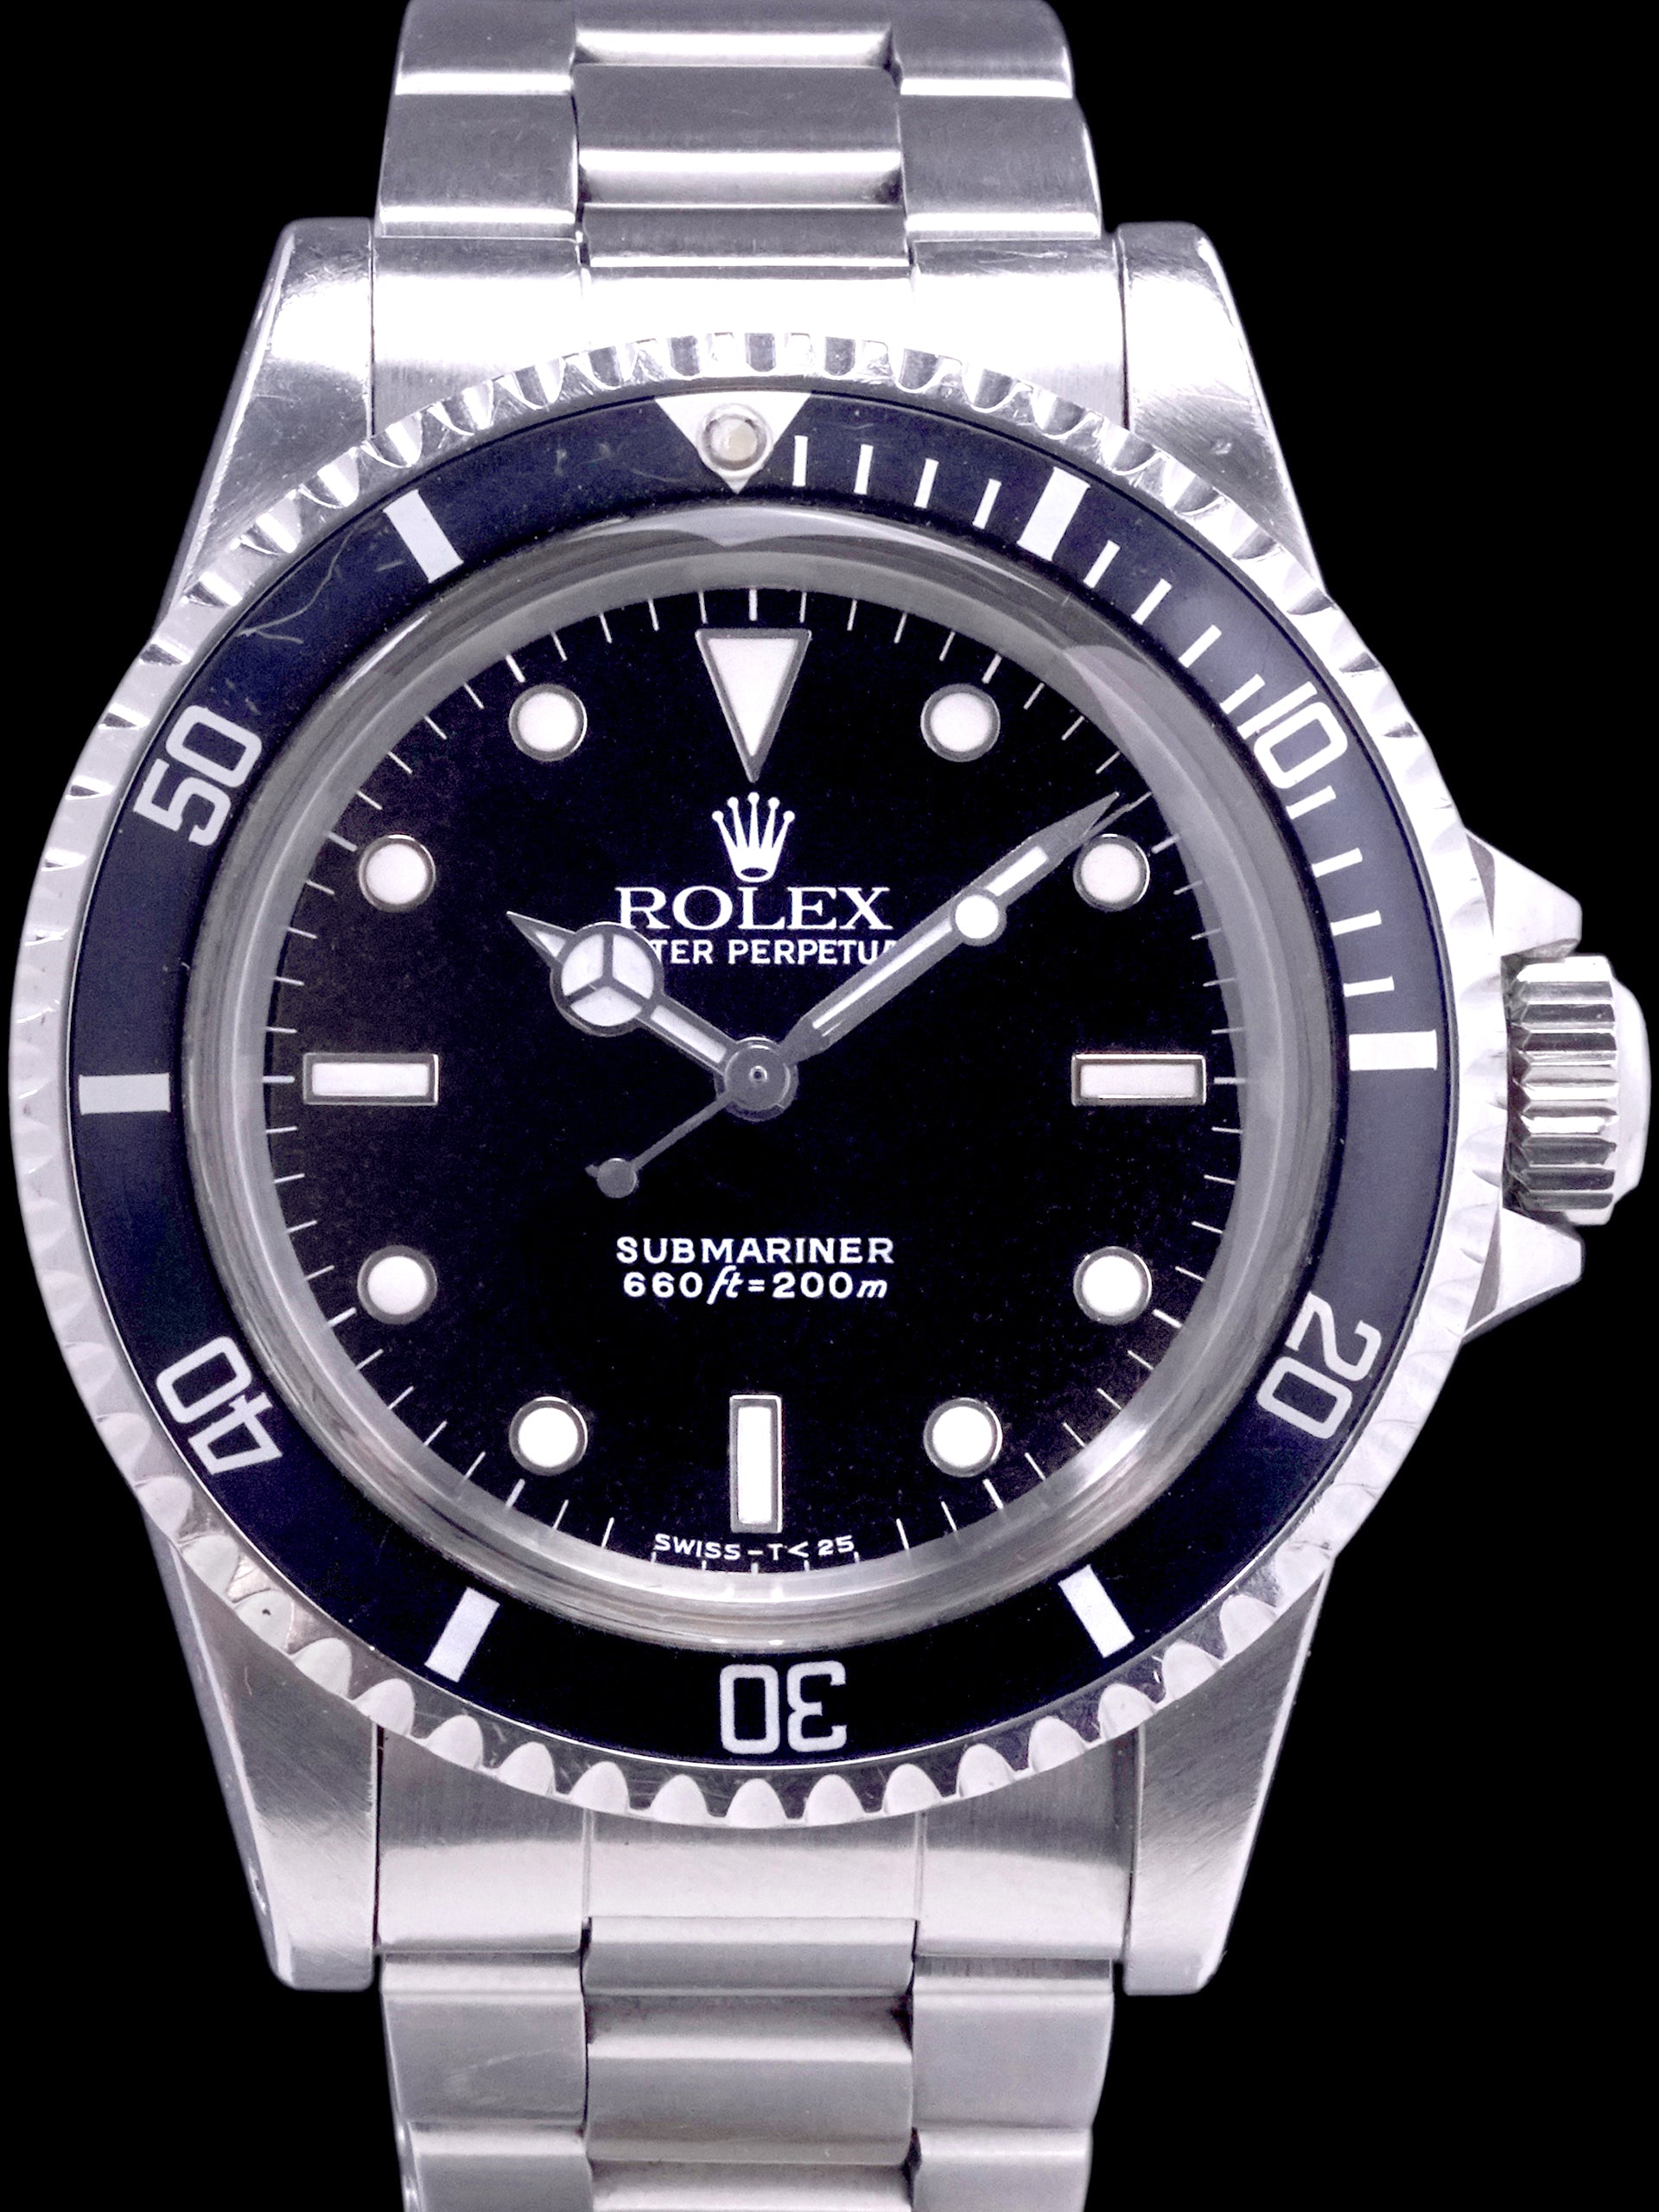 1989 Rolex Submariner (Ref. 5513) "L Serial"